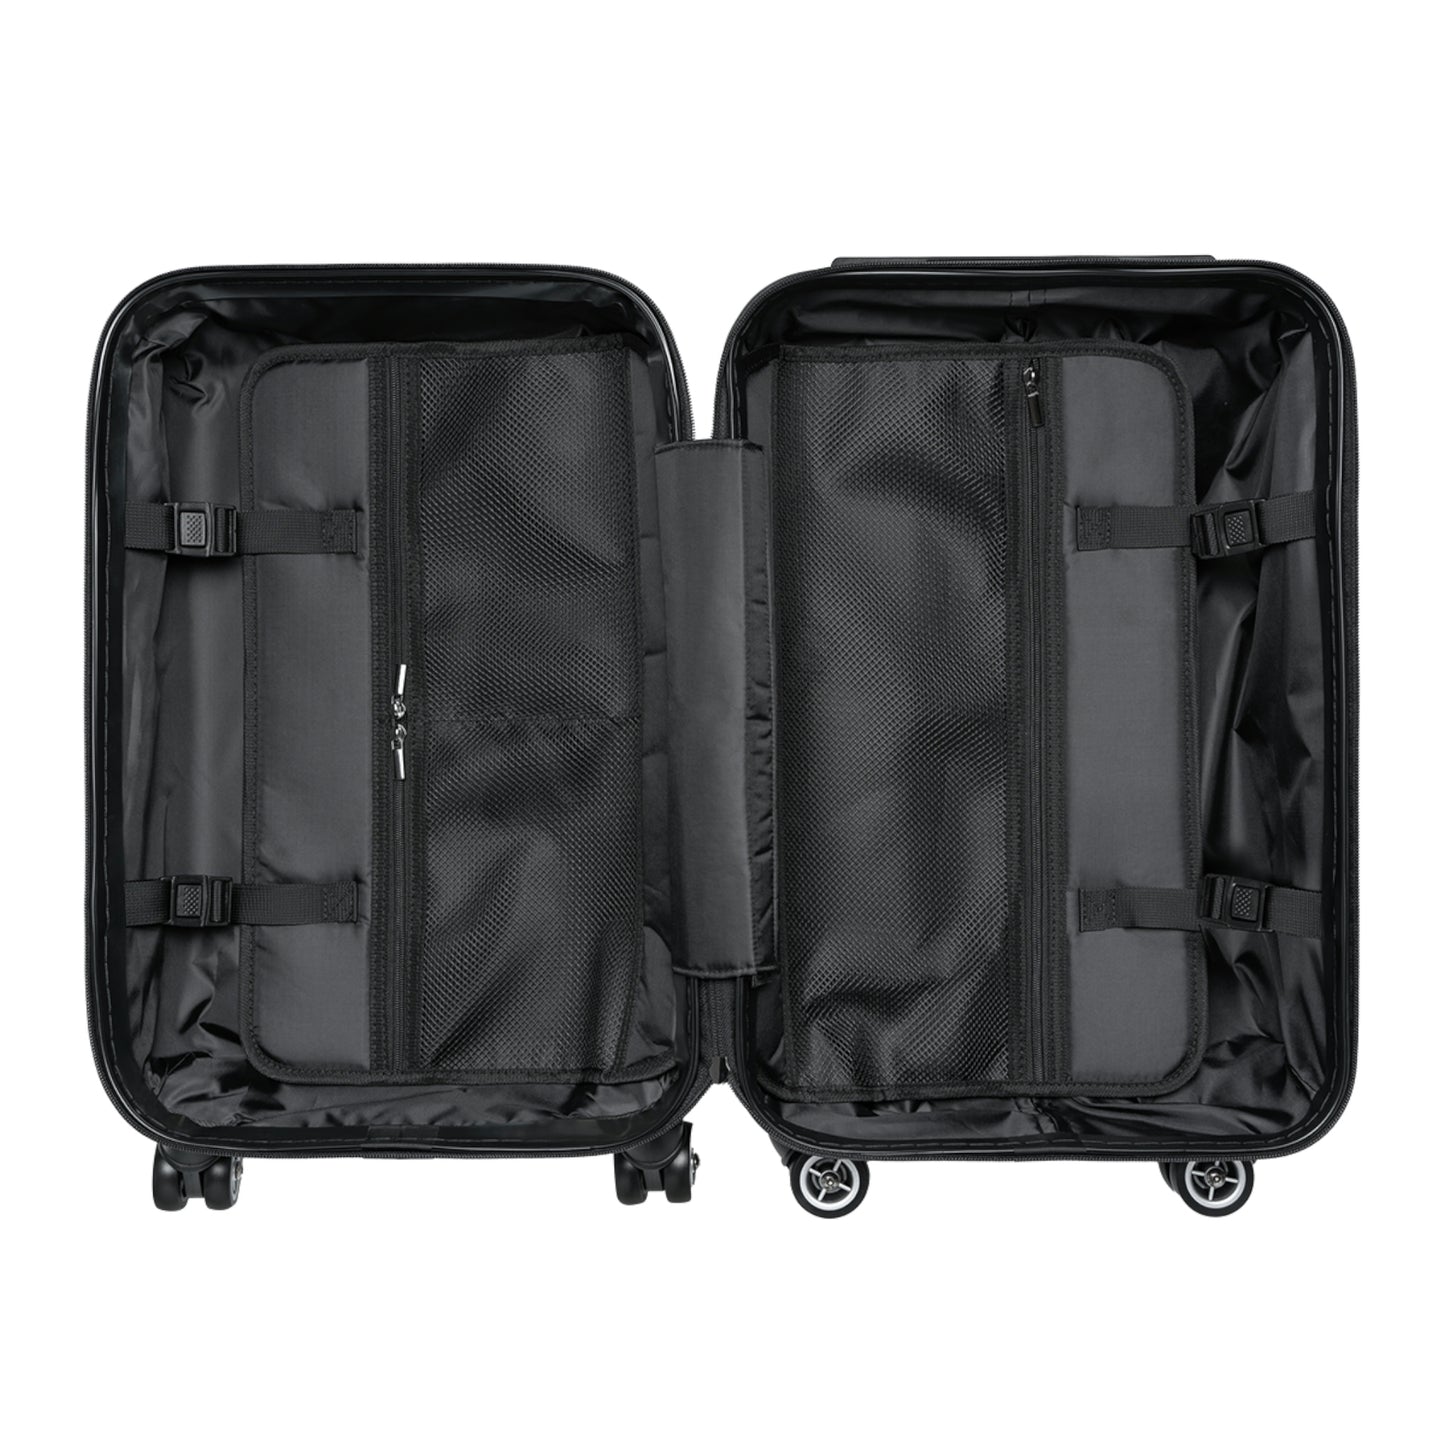 Beyond Petroleum, Travel Unique Suitcase